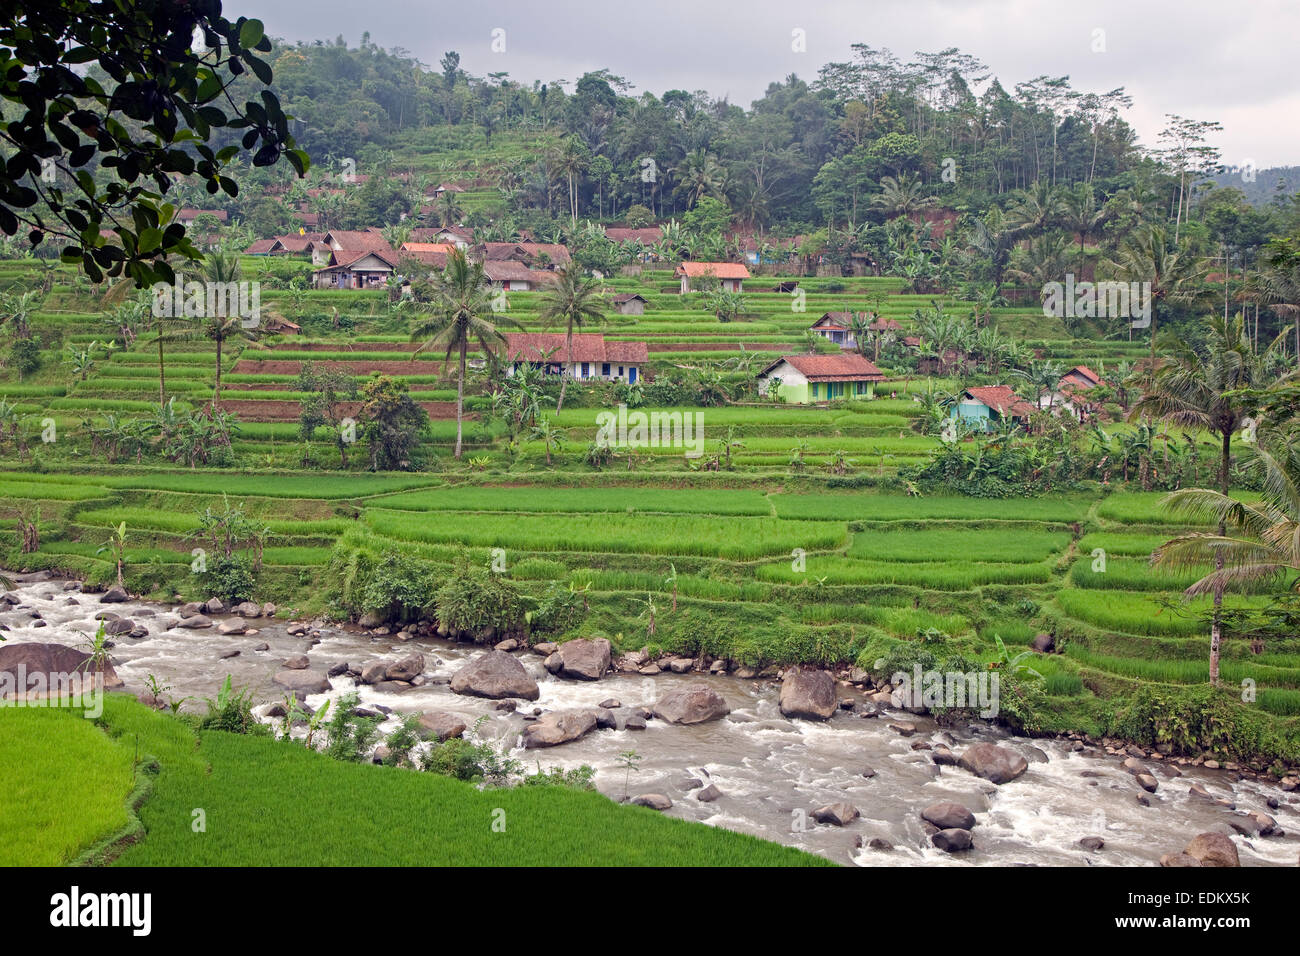 Indonesiano villaggio rurale e le risaie nella stagione delle piogge, Garut Regency, West Java, Indonesia Foto Stock